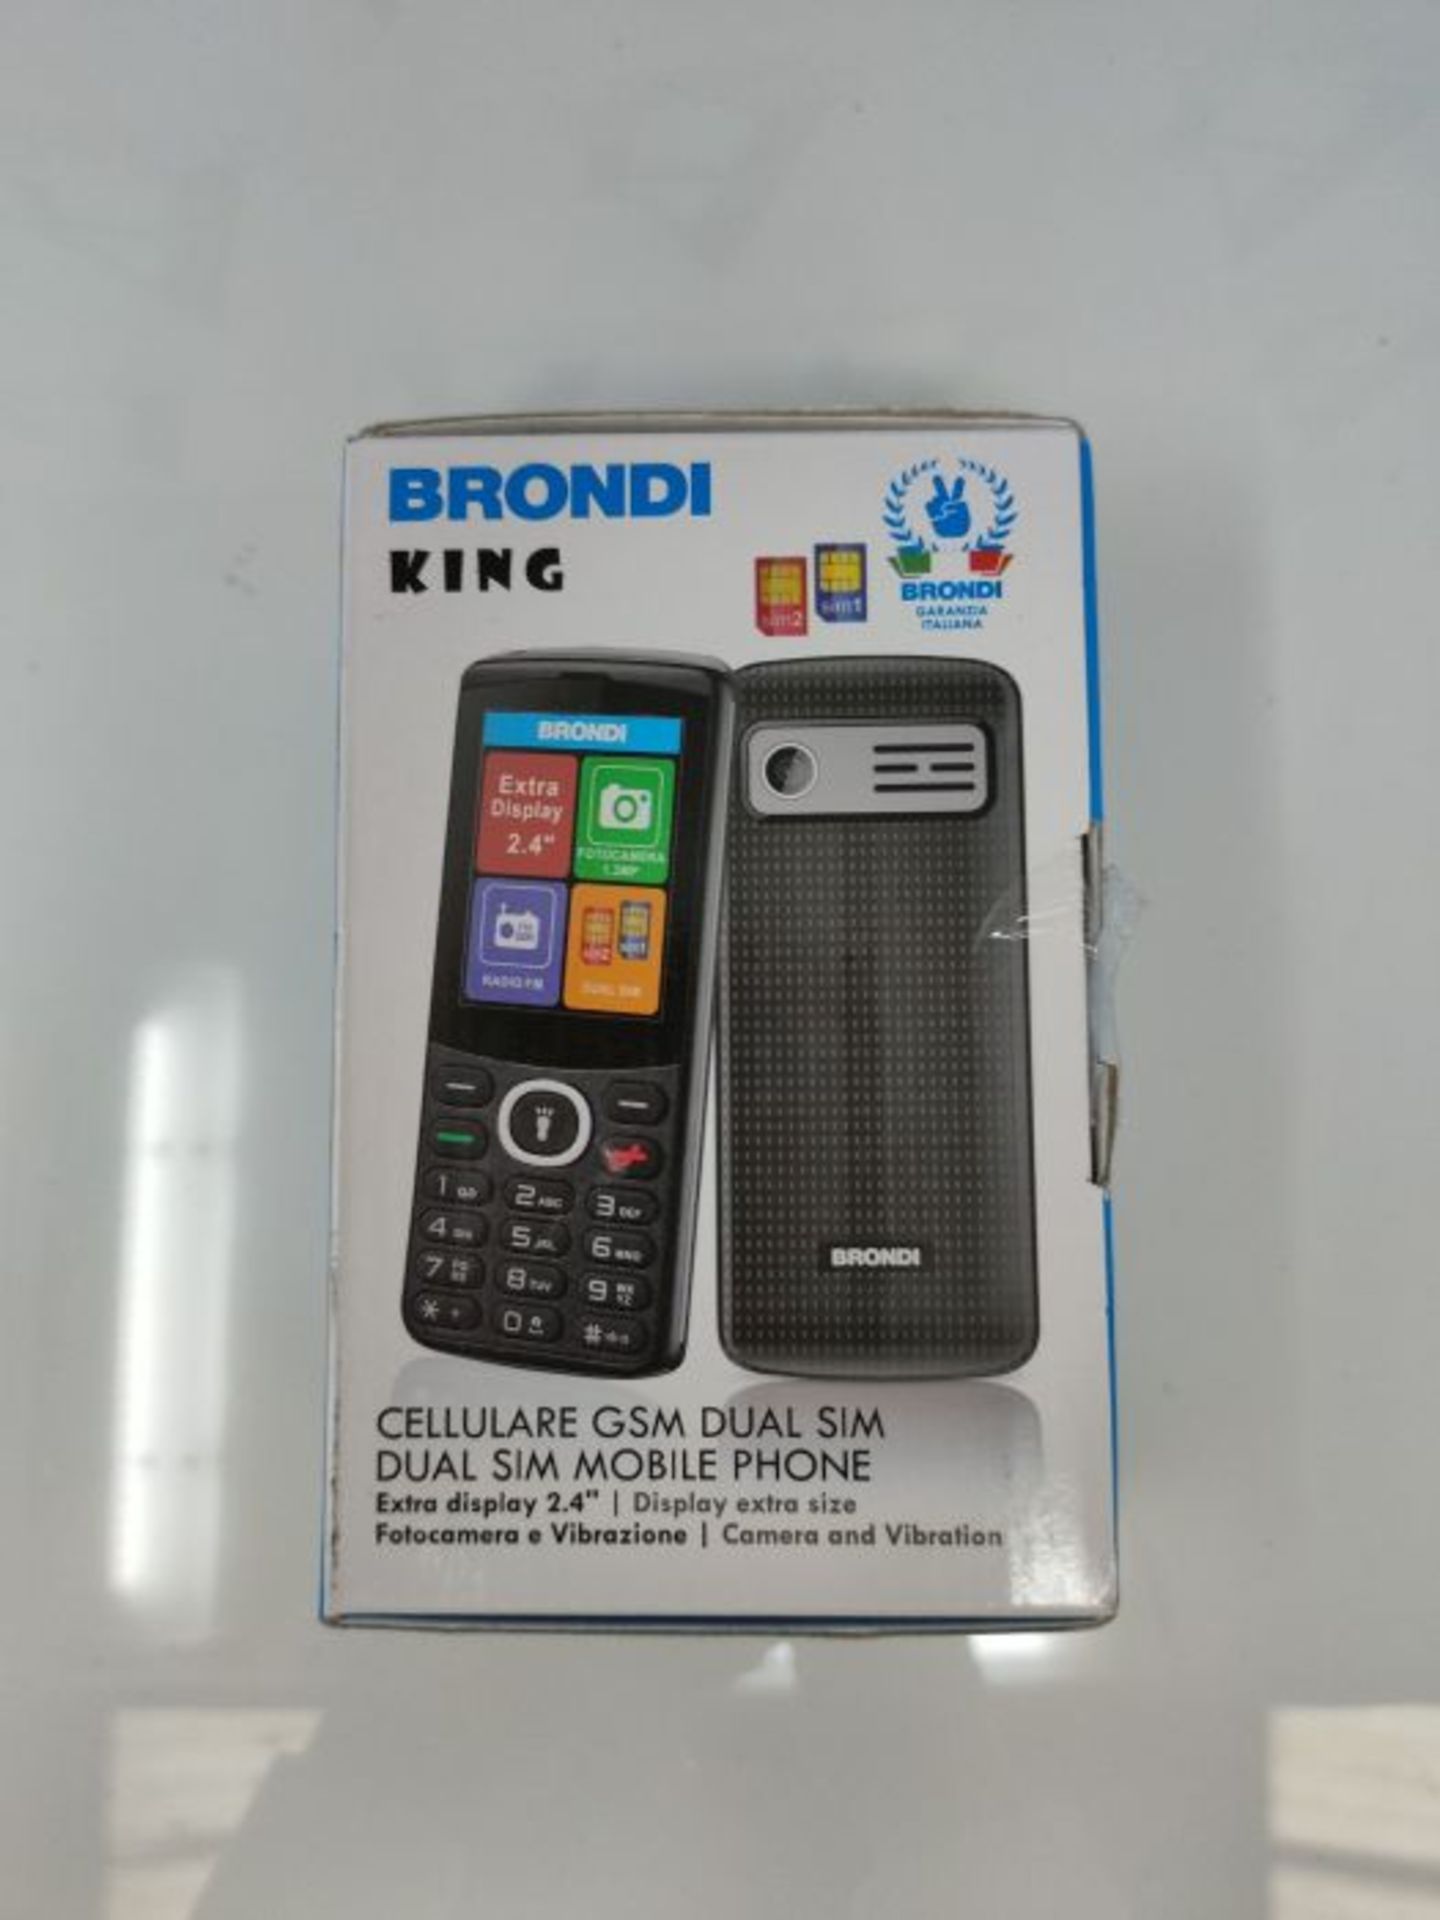 Brondi King Telefono Cellulare, Black - Image 2 of 3